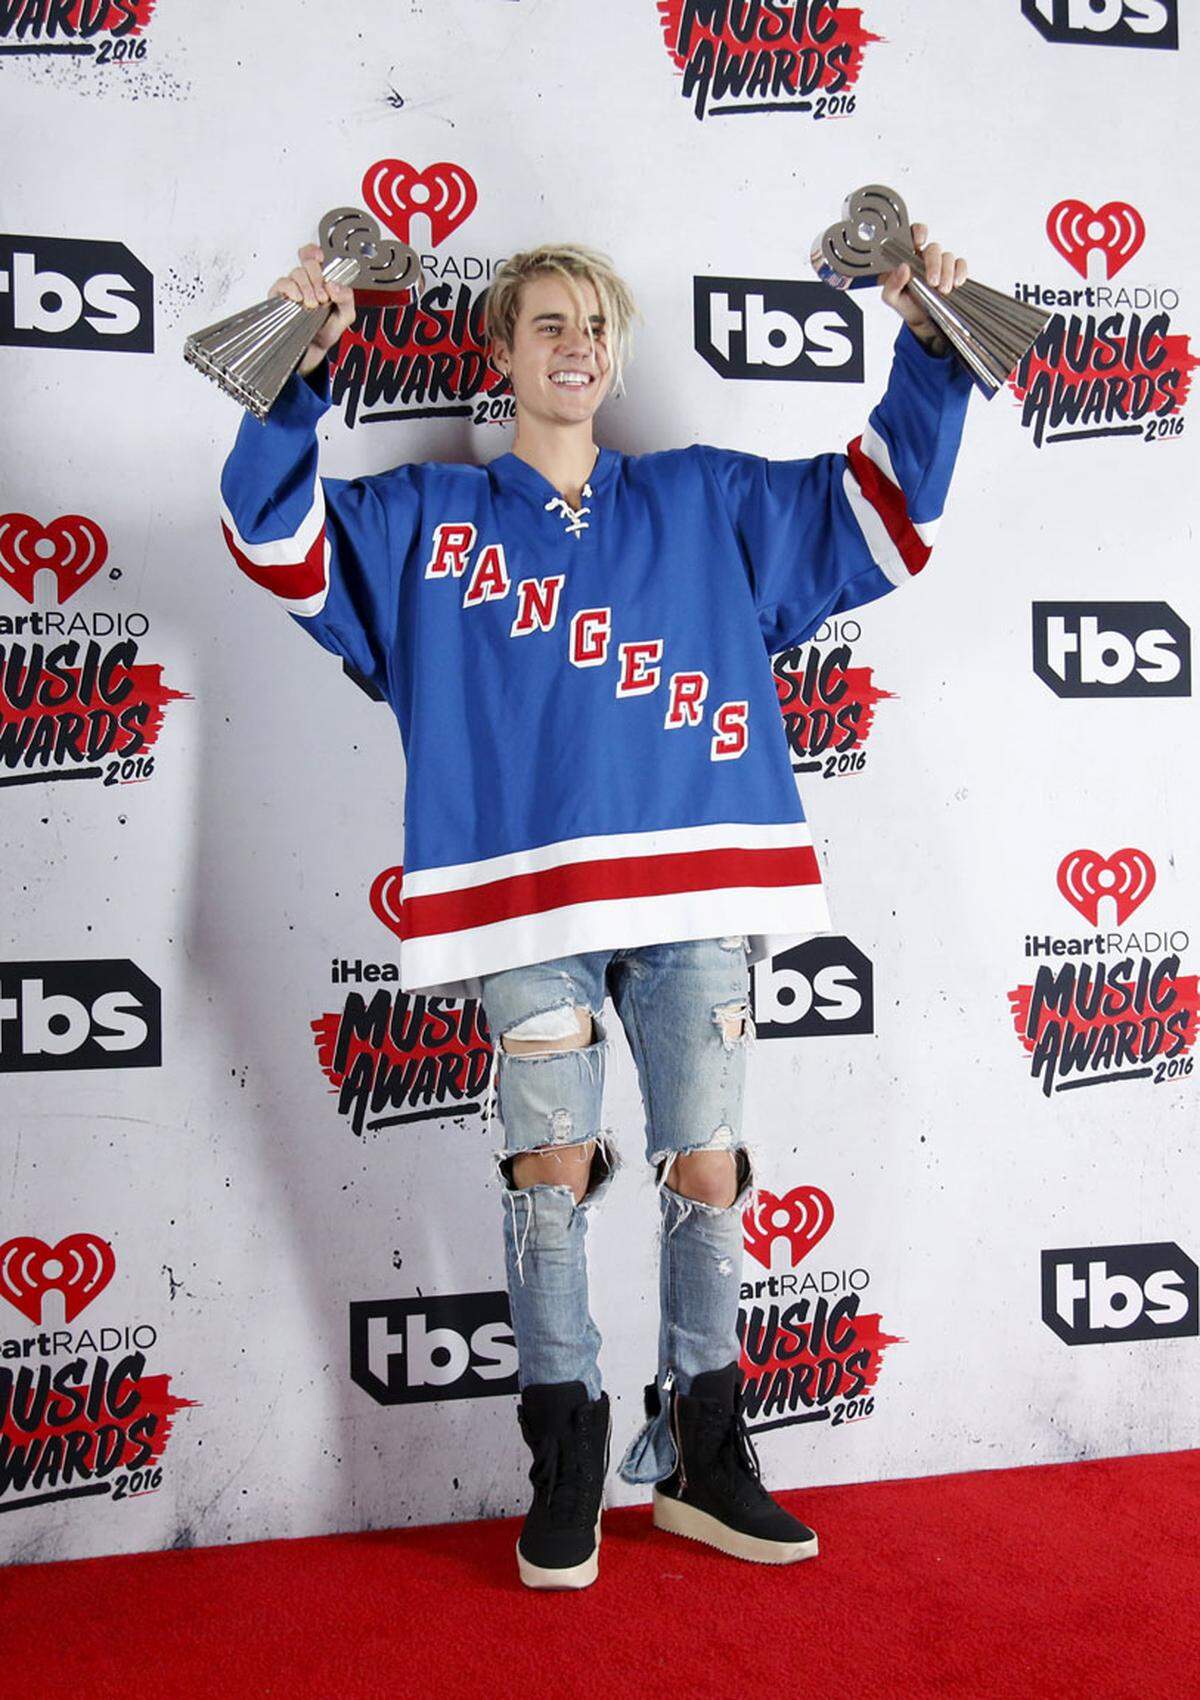 Justin Bieber freute sich über seine Awards, sein Outfit war aber nicht preisverdächtig.